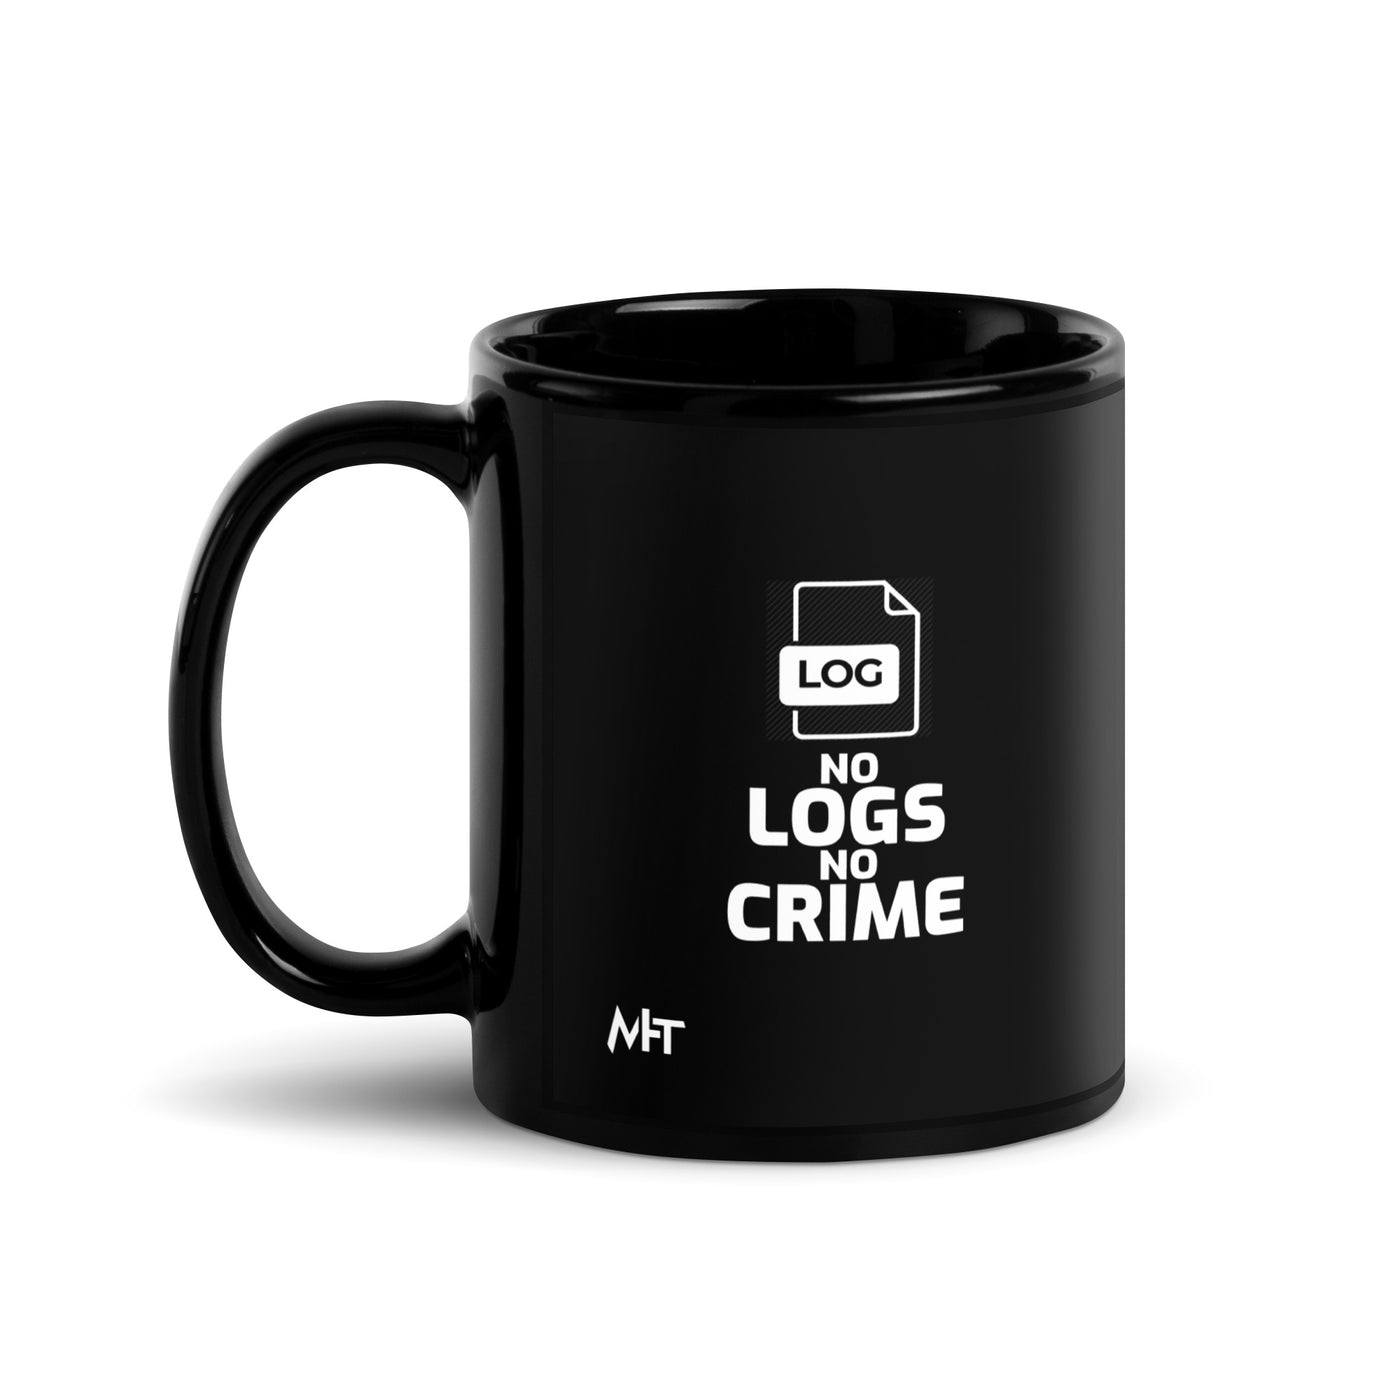 No logs no crime -  Black Glossy Mug